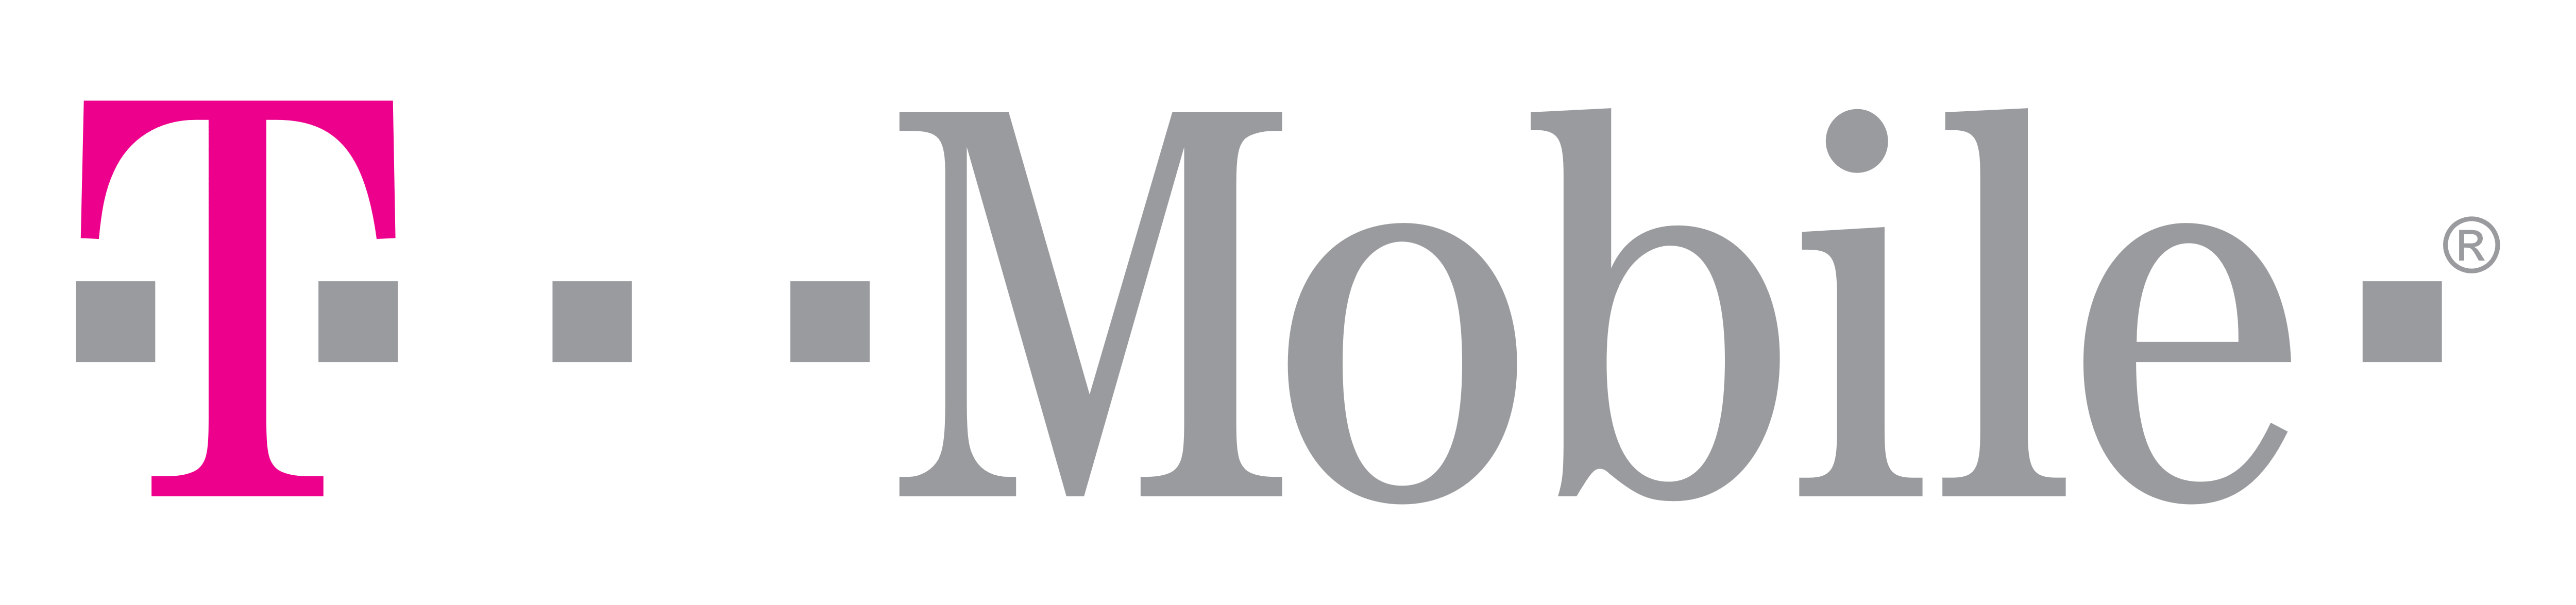 TMobile Logos Download